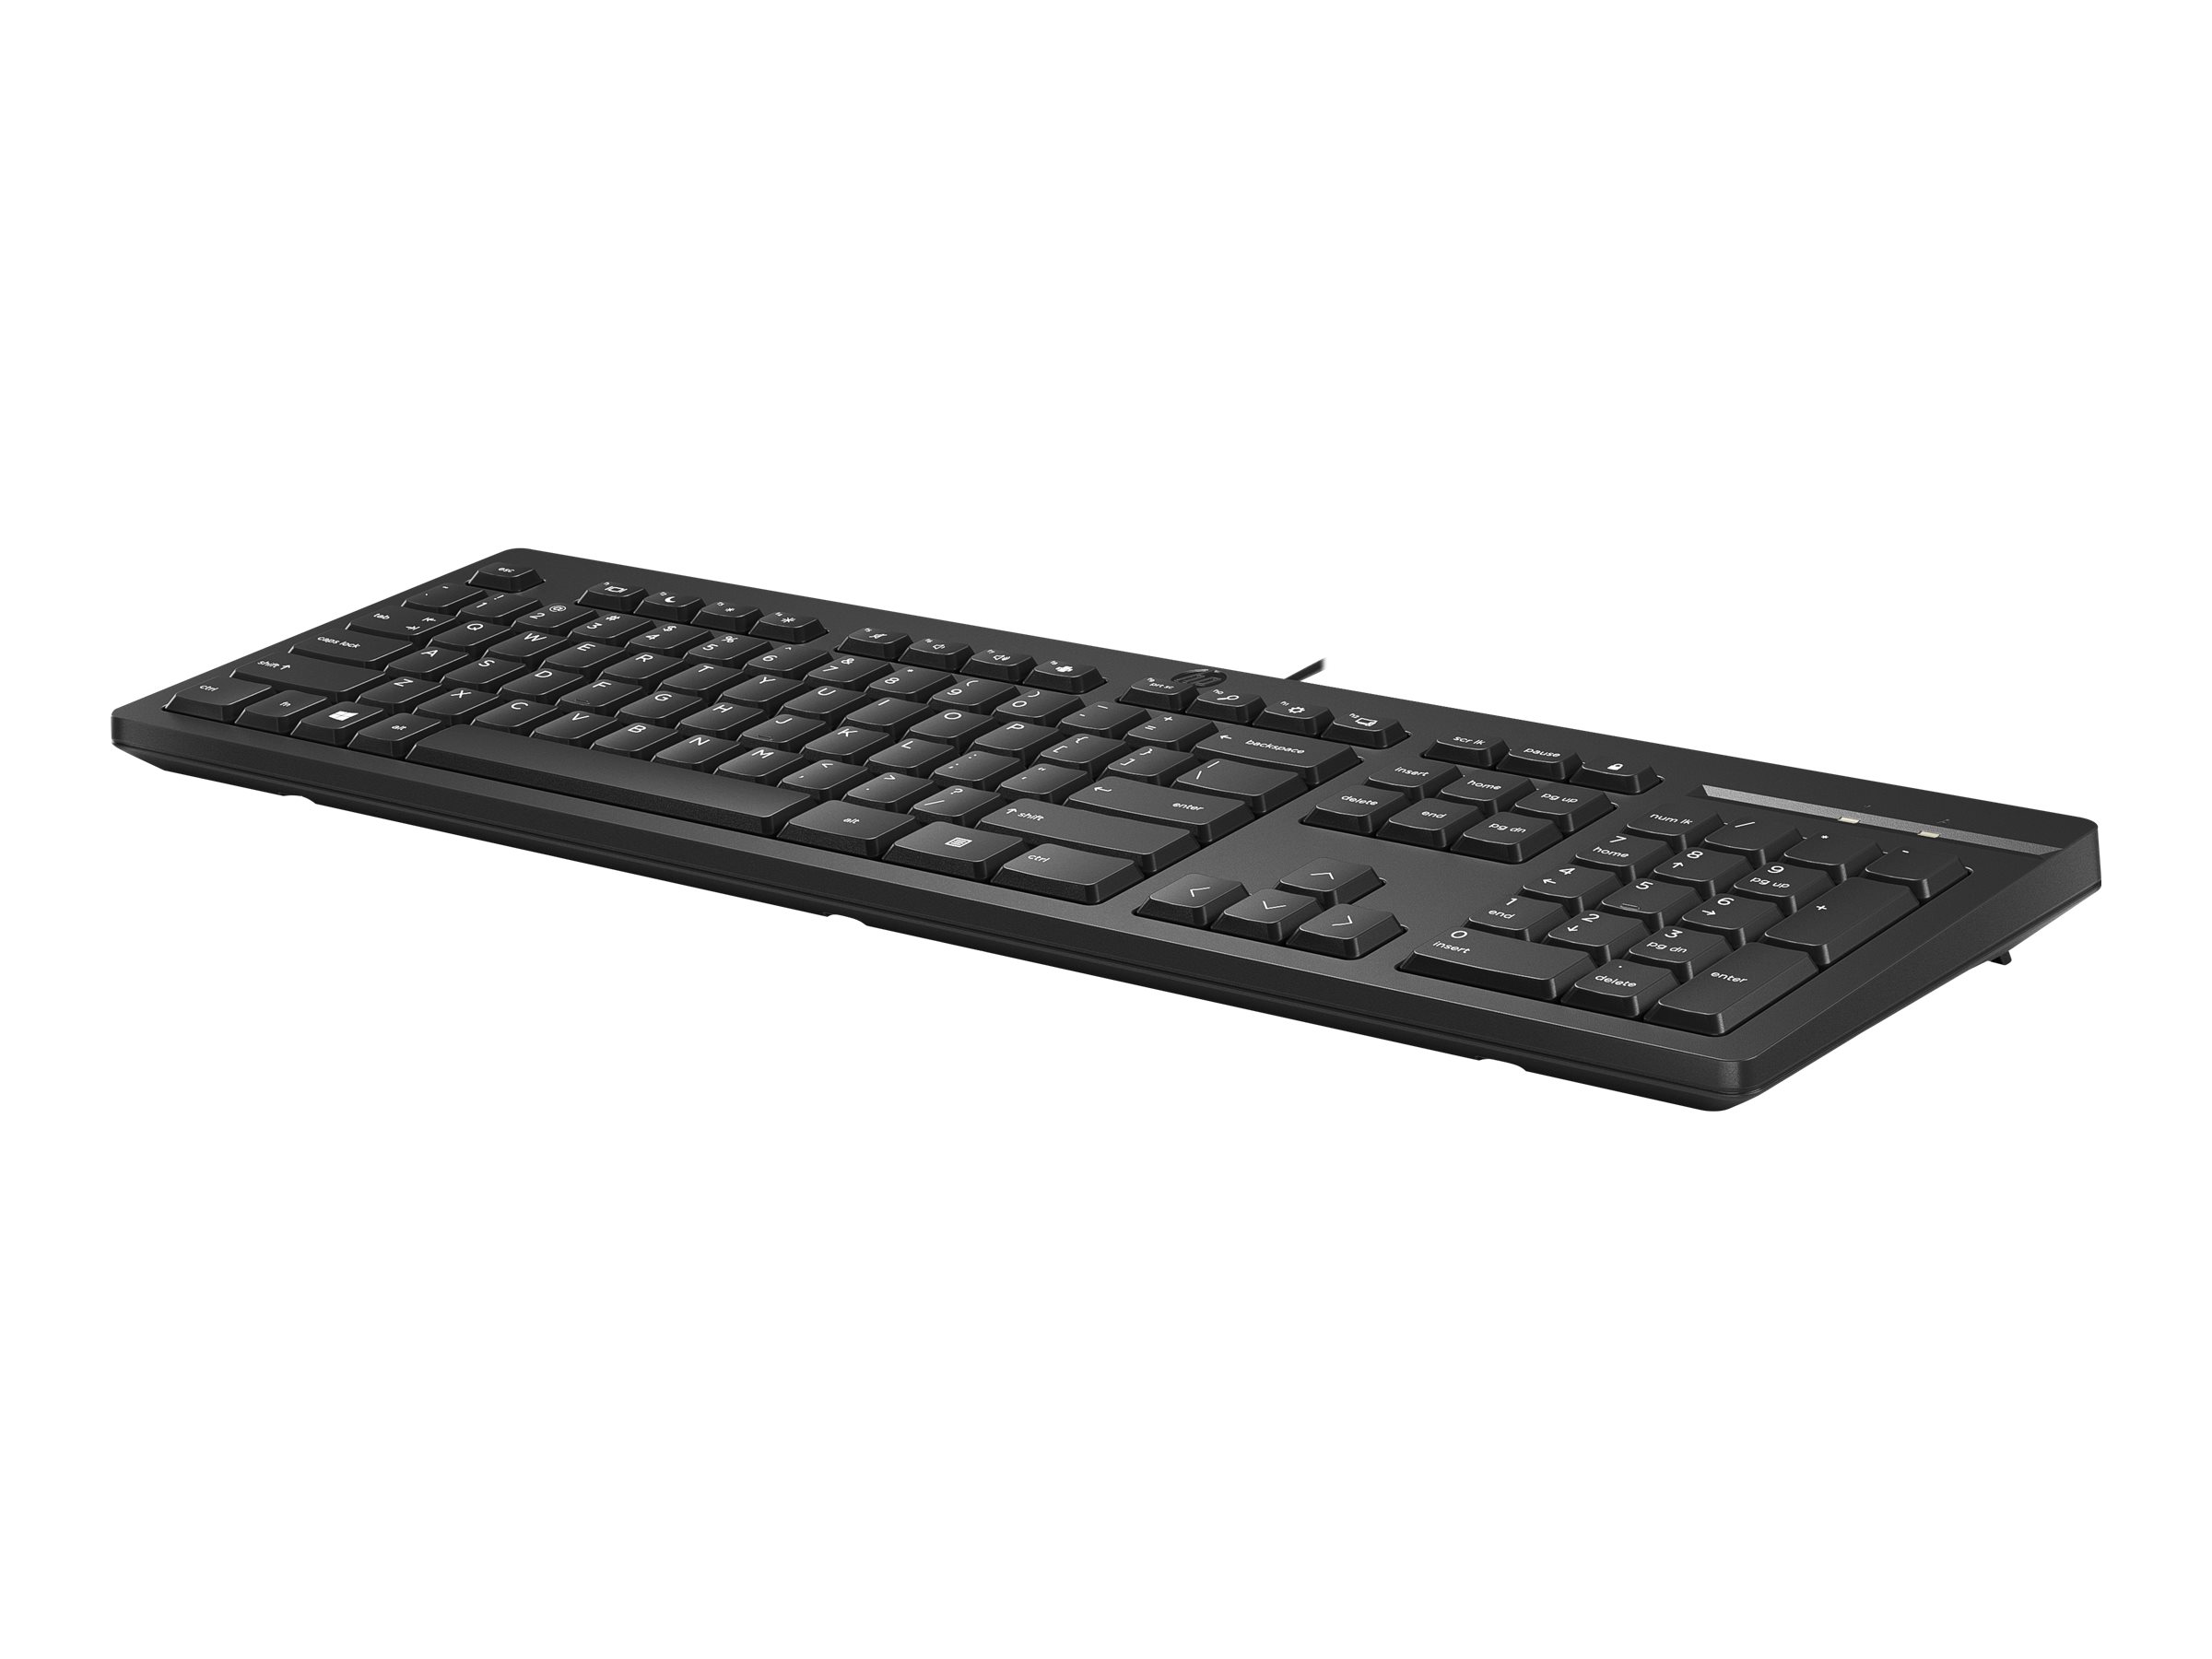 HP 125 - Tastatur - USB - GB - für HP 34, Elite Mobile Thin Client mt645 G7, Laptop 15, Pro Mobile Thin Client mt440 G3